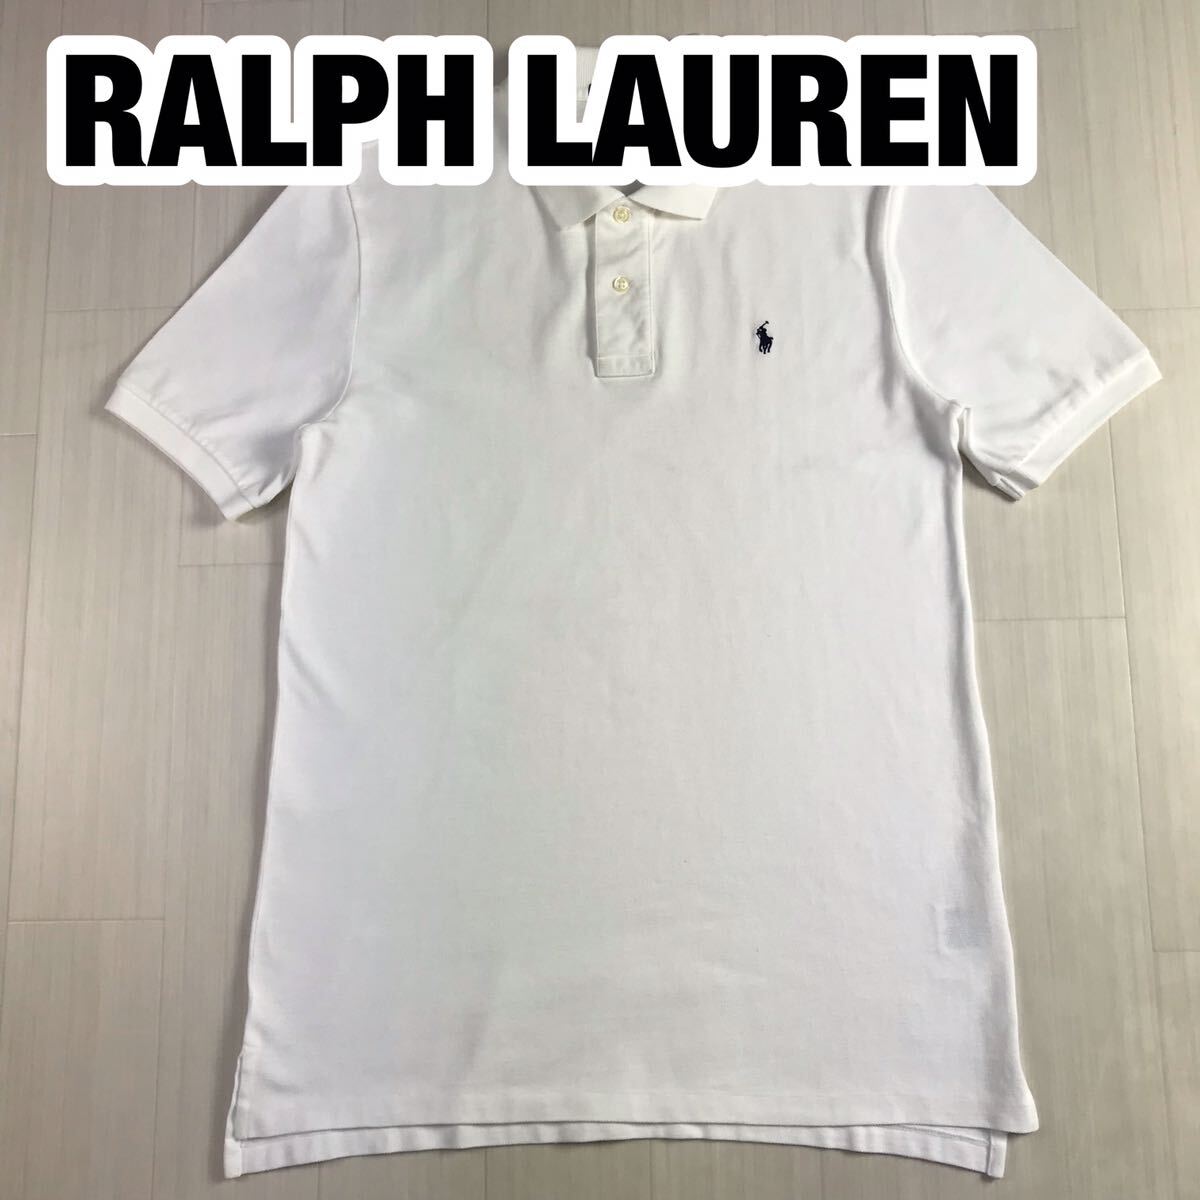 POLO BY RALPH LAUREN ポロ バイ ラルフローレン XL(18-20) ホワイト ユースサイズ 刺繍ポニー_画像1